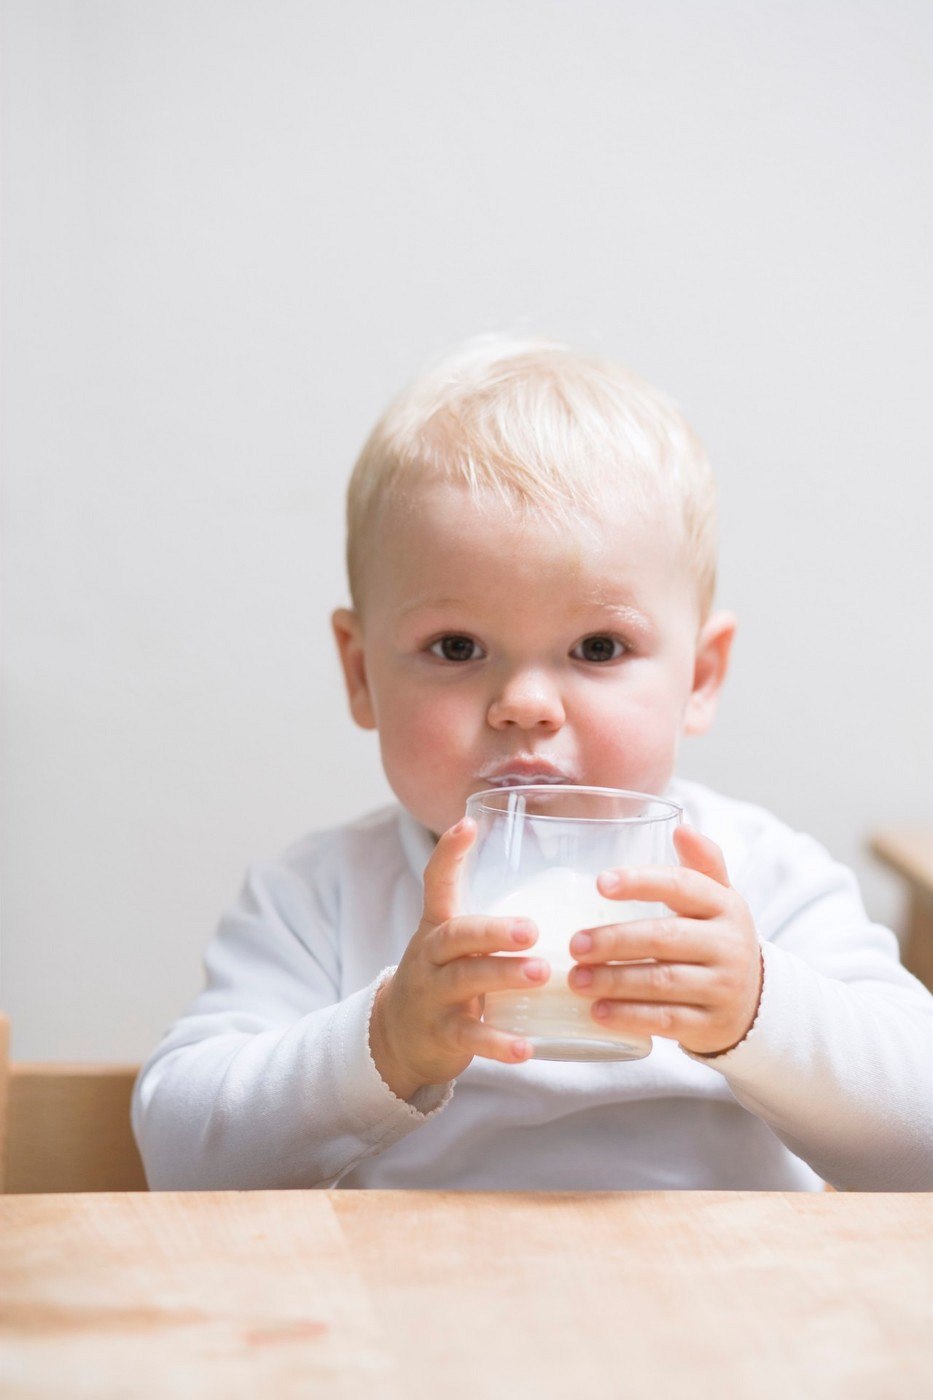 Mléko v jídelníčku batolat často chybí. Může to ovlivnit jejich zdraví -  iDNES.cz